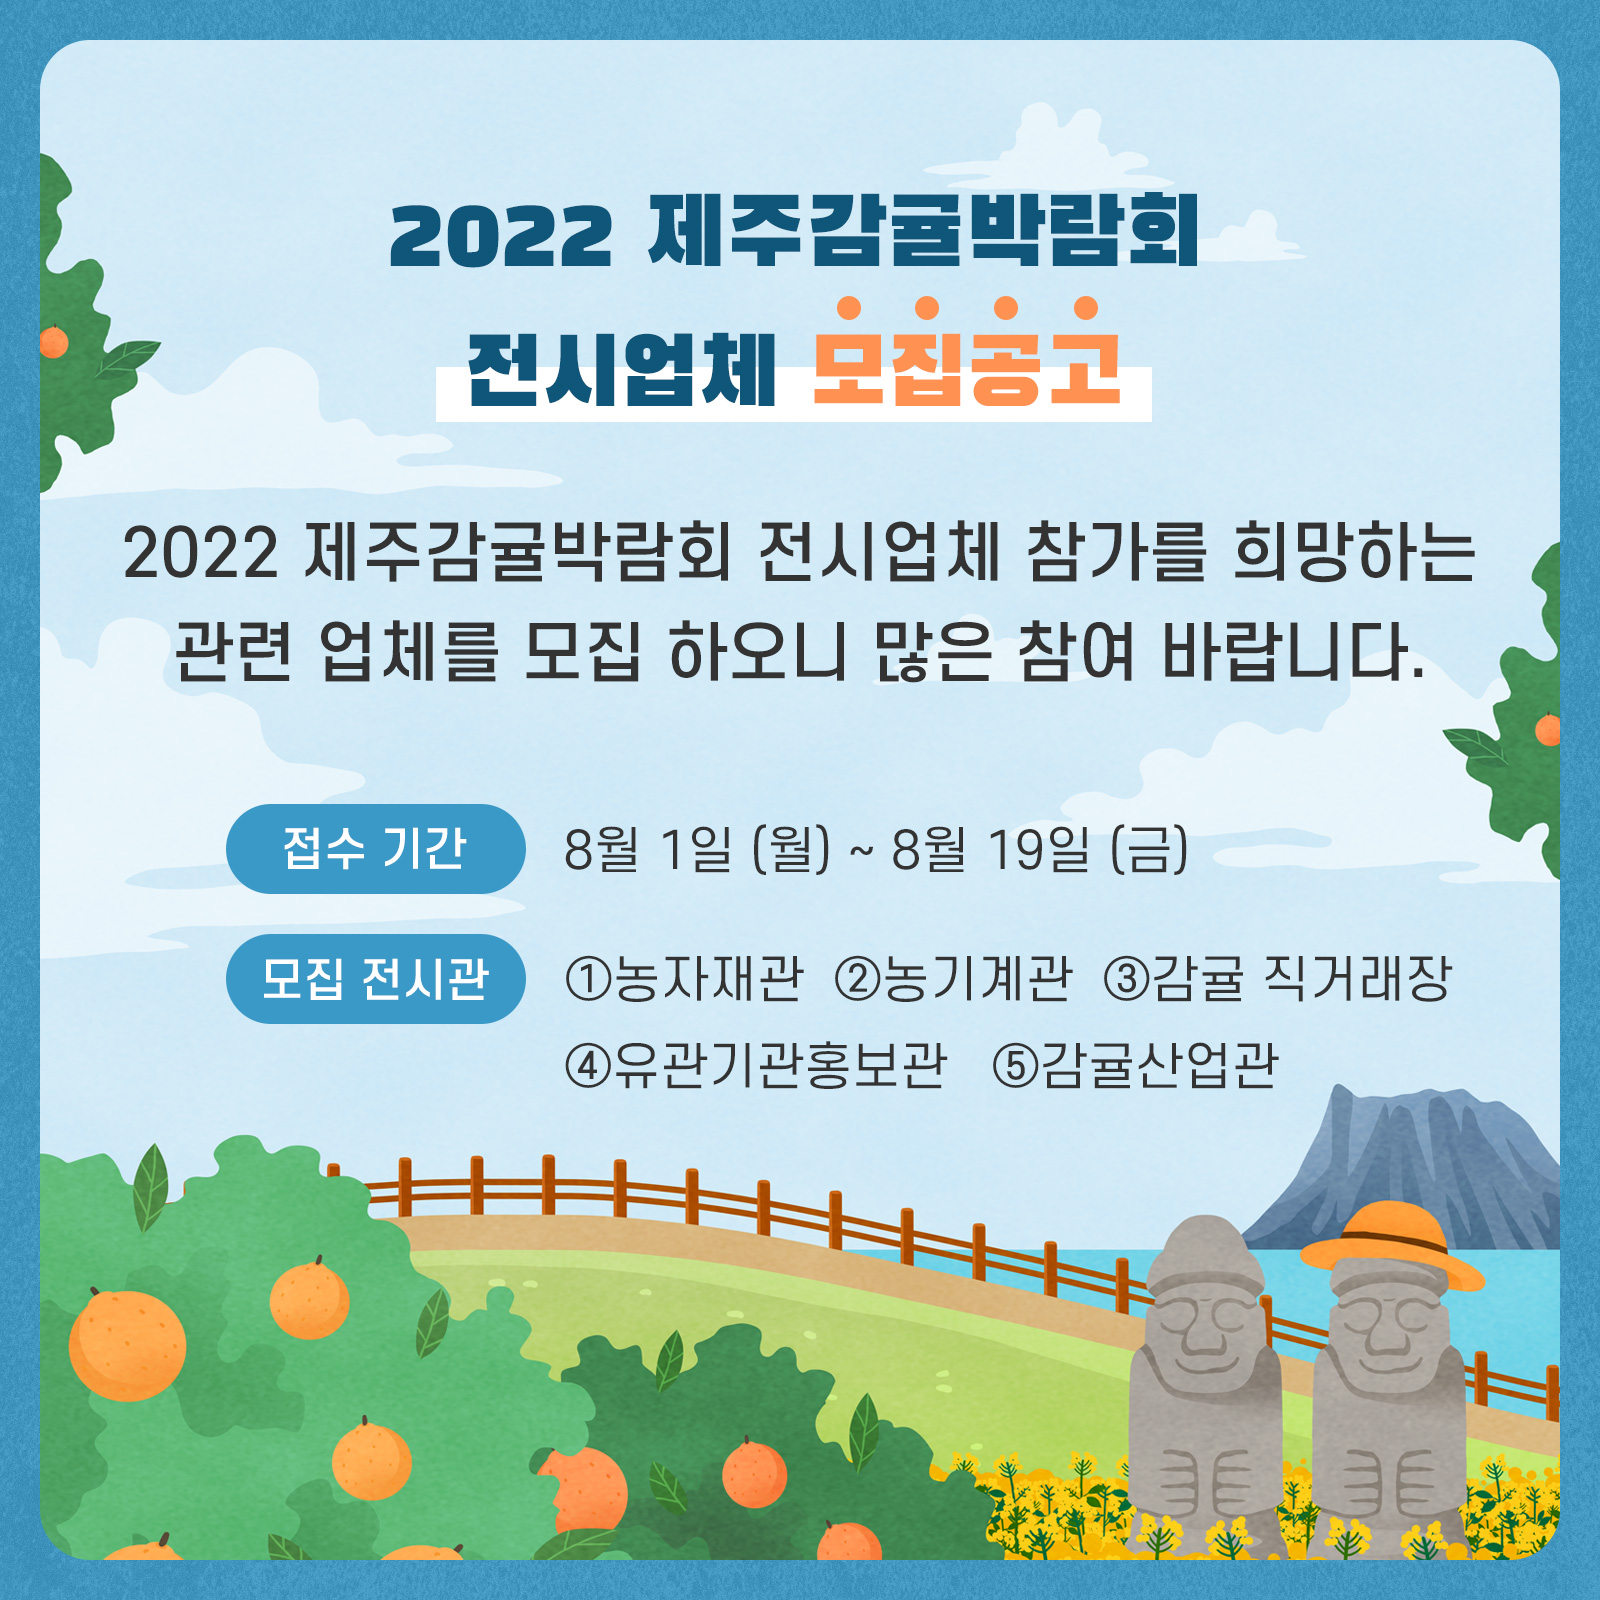 2022 제주감귤박람회 전시참가 신청 안내